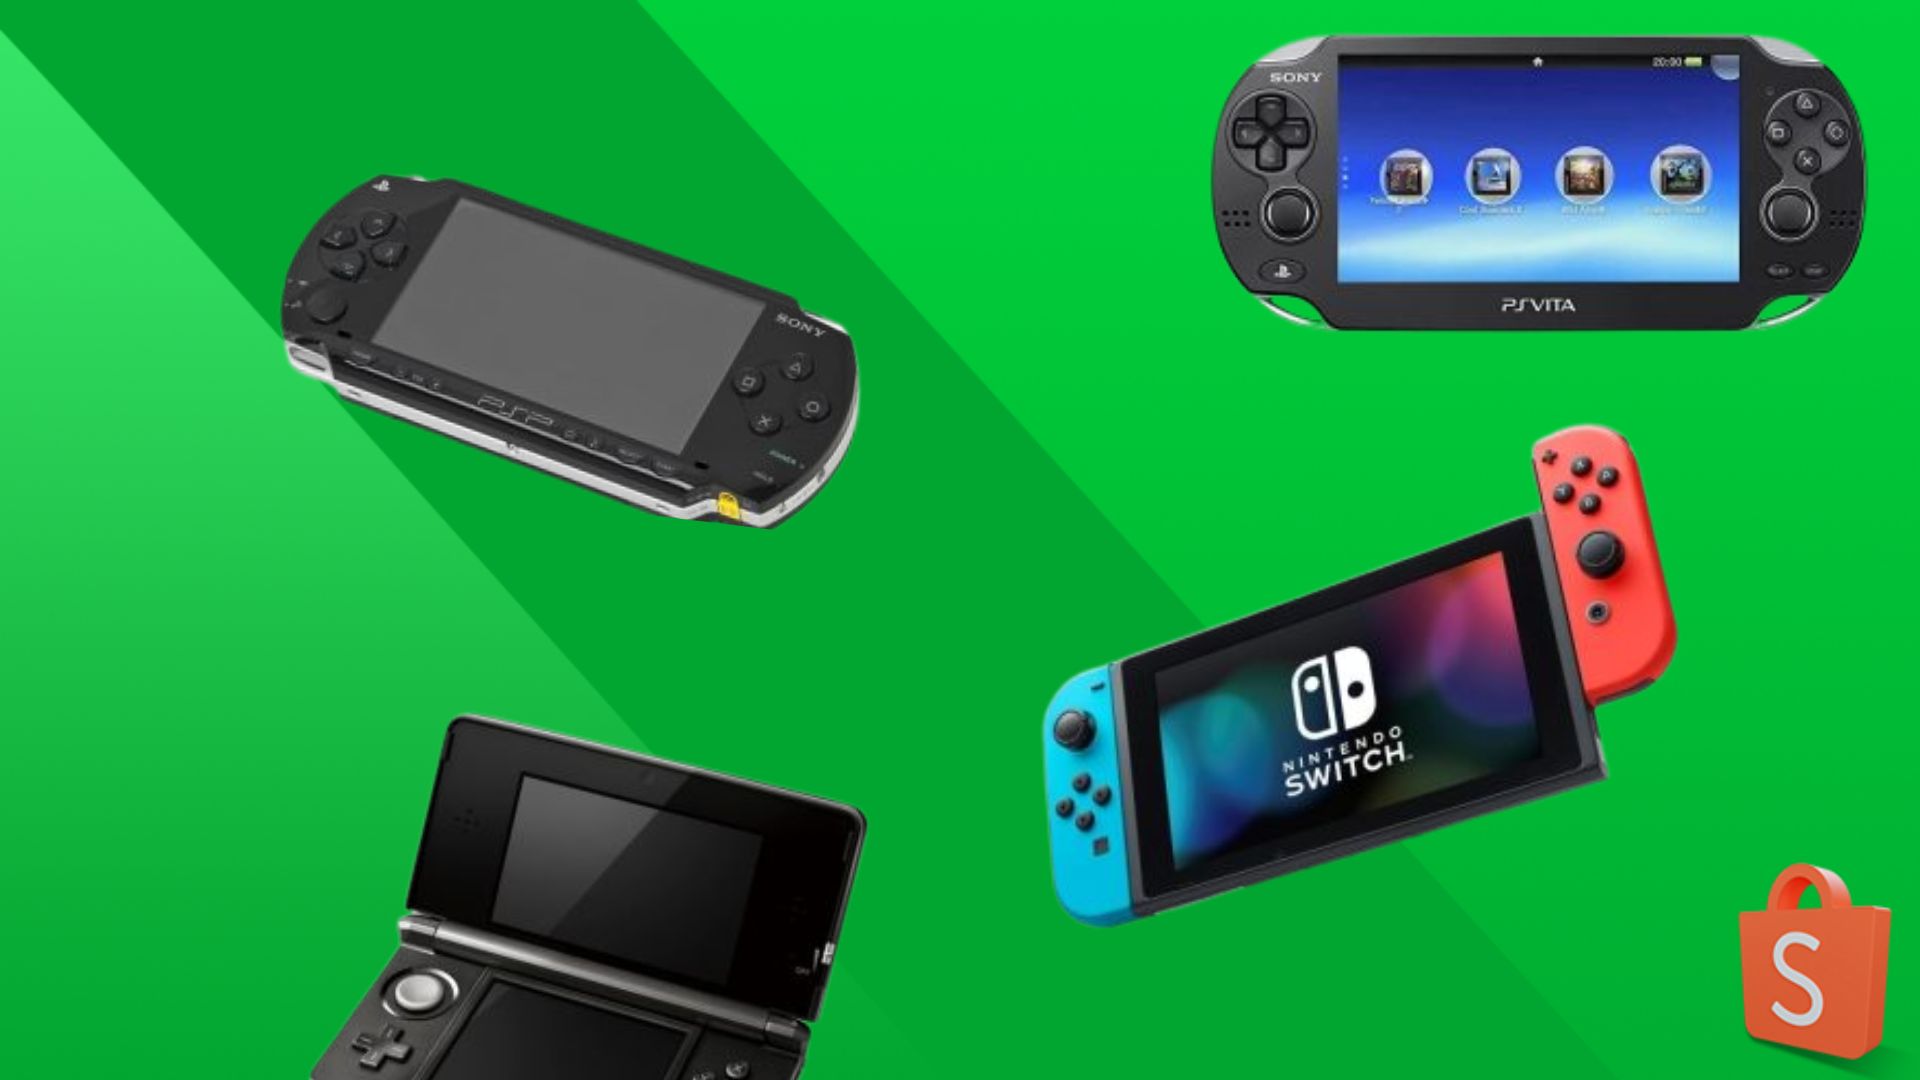 Os melhores acessórios e jogos baratos de Nintendo Switch